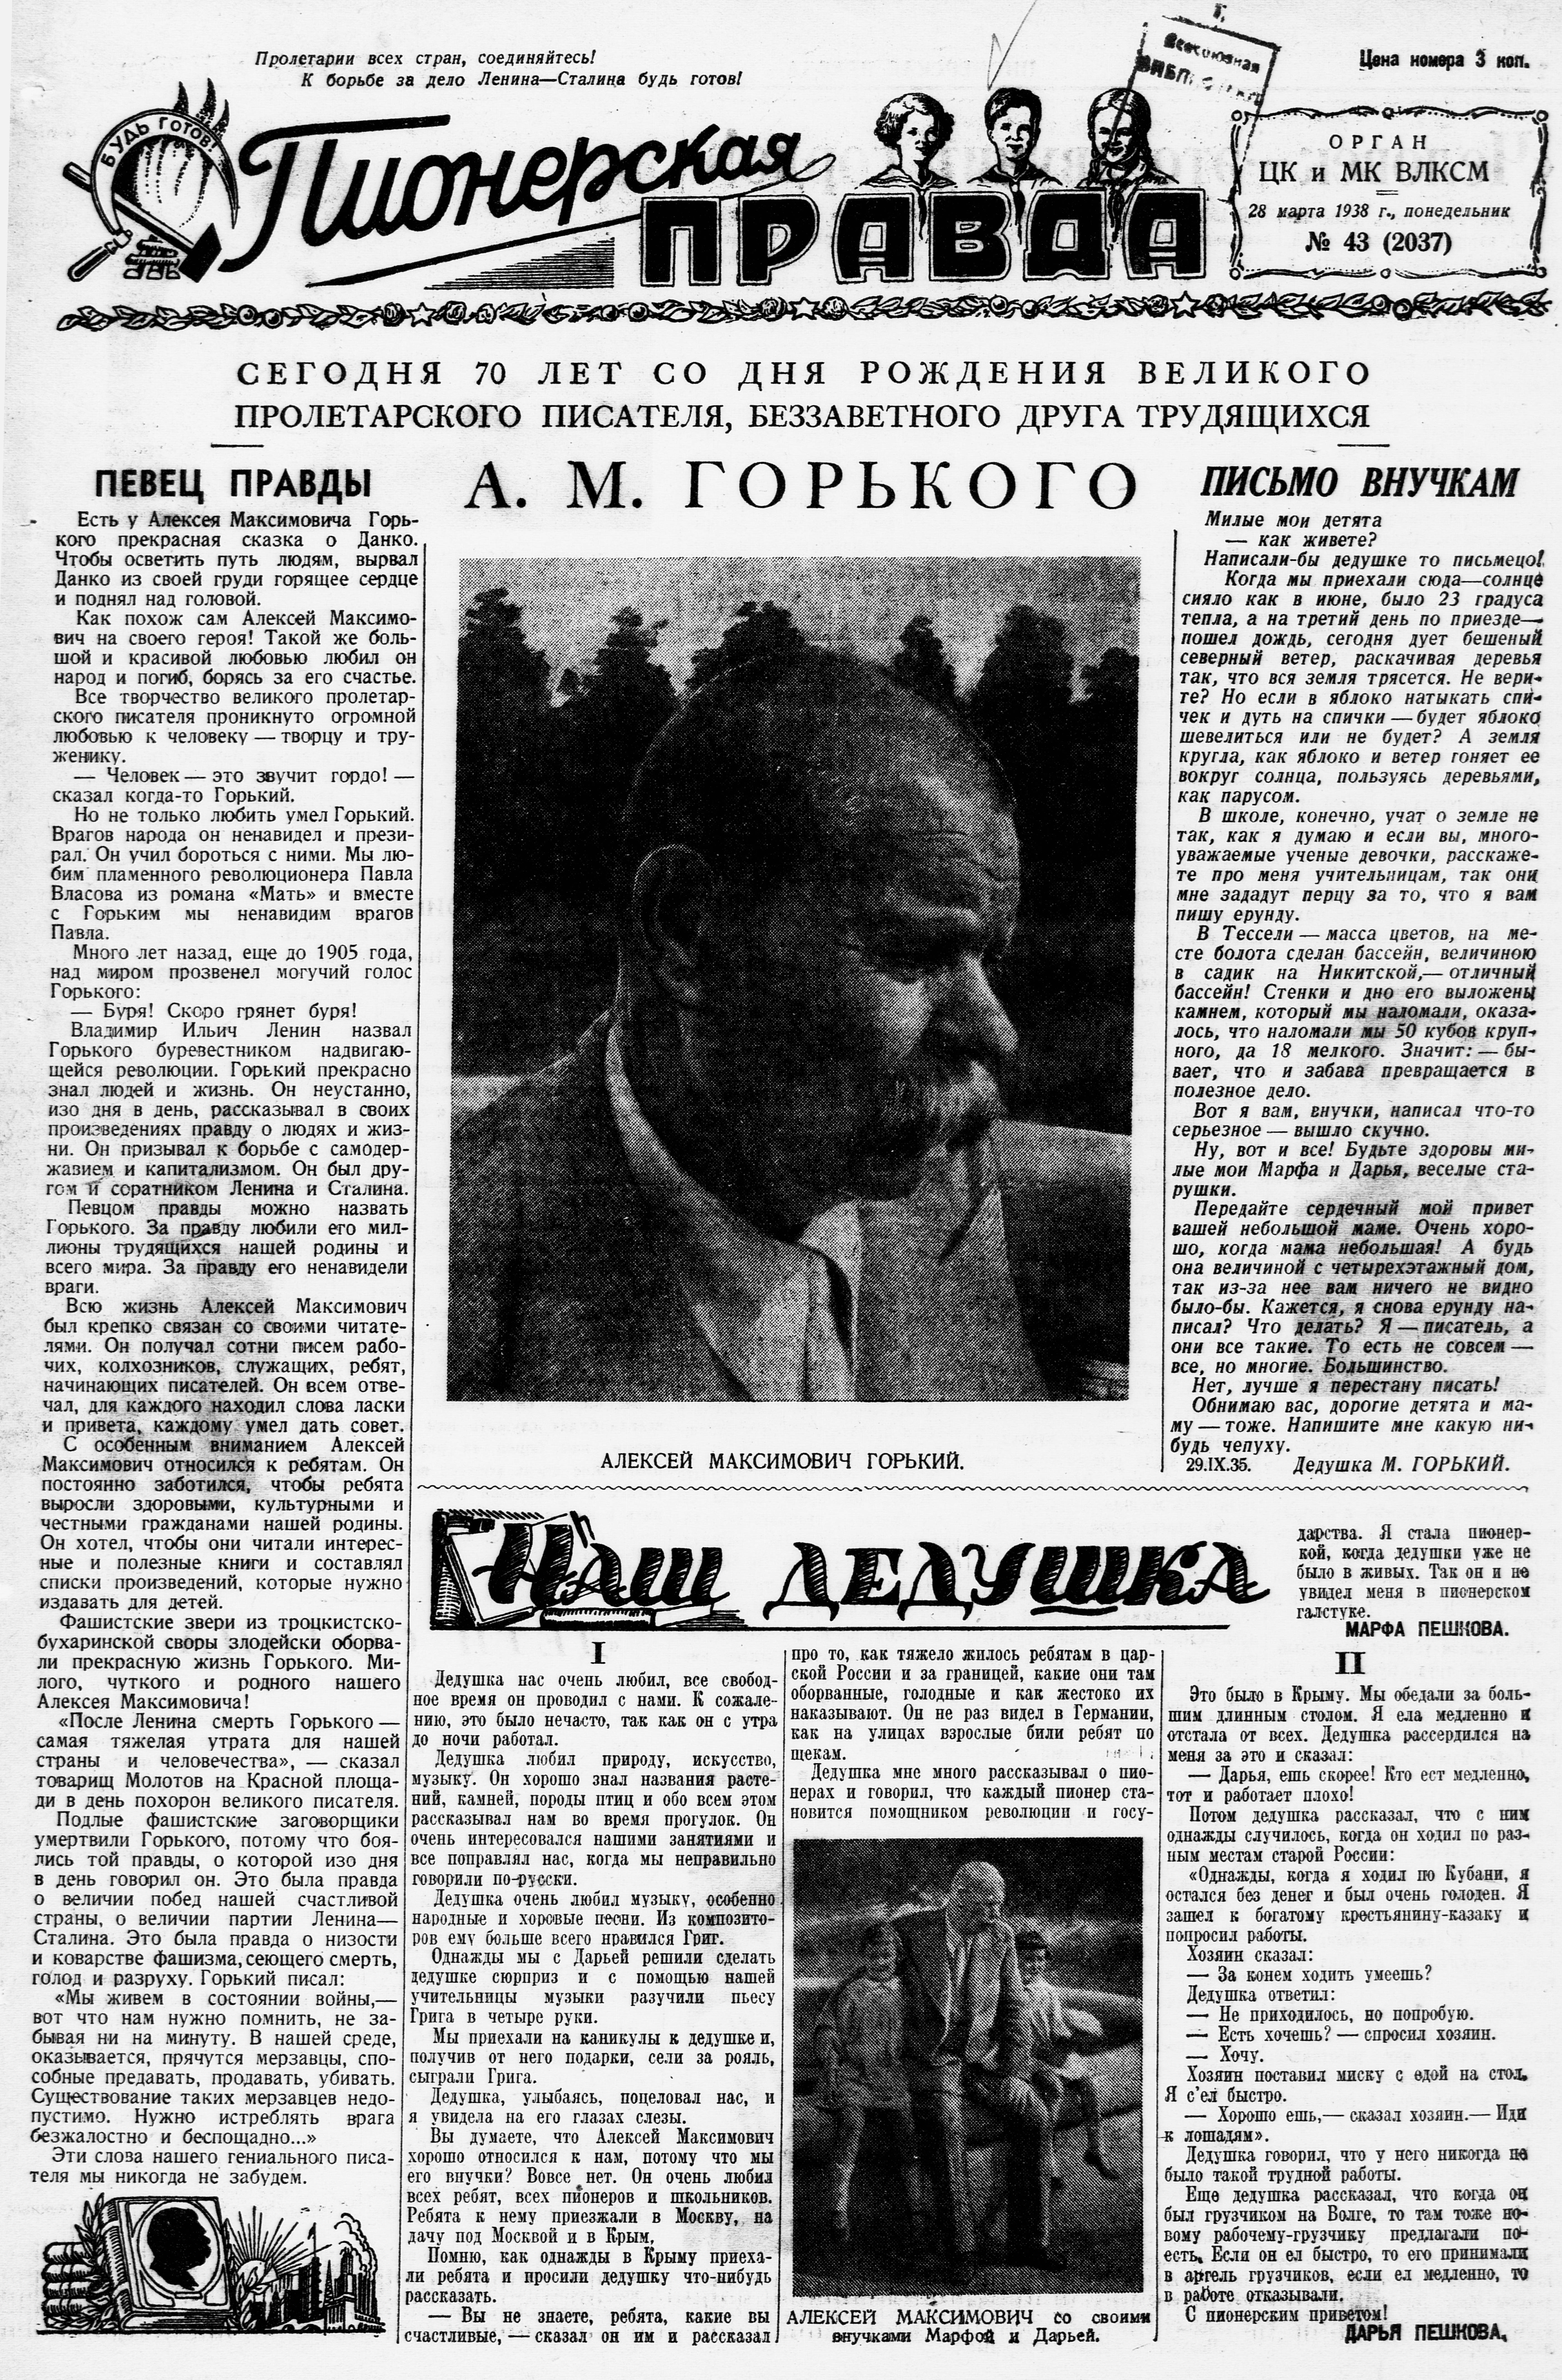 Пионерская правда. 1938. № 043 (2037): Орган ЦК и МК ВЛКСМ - 1938